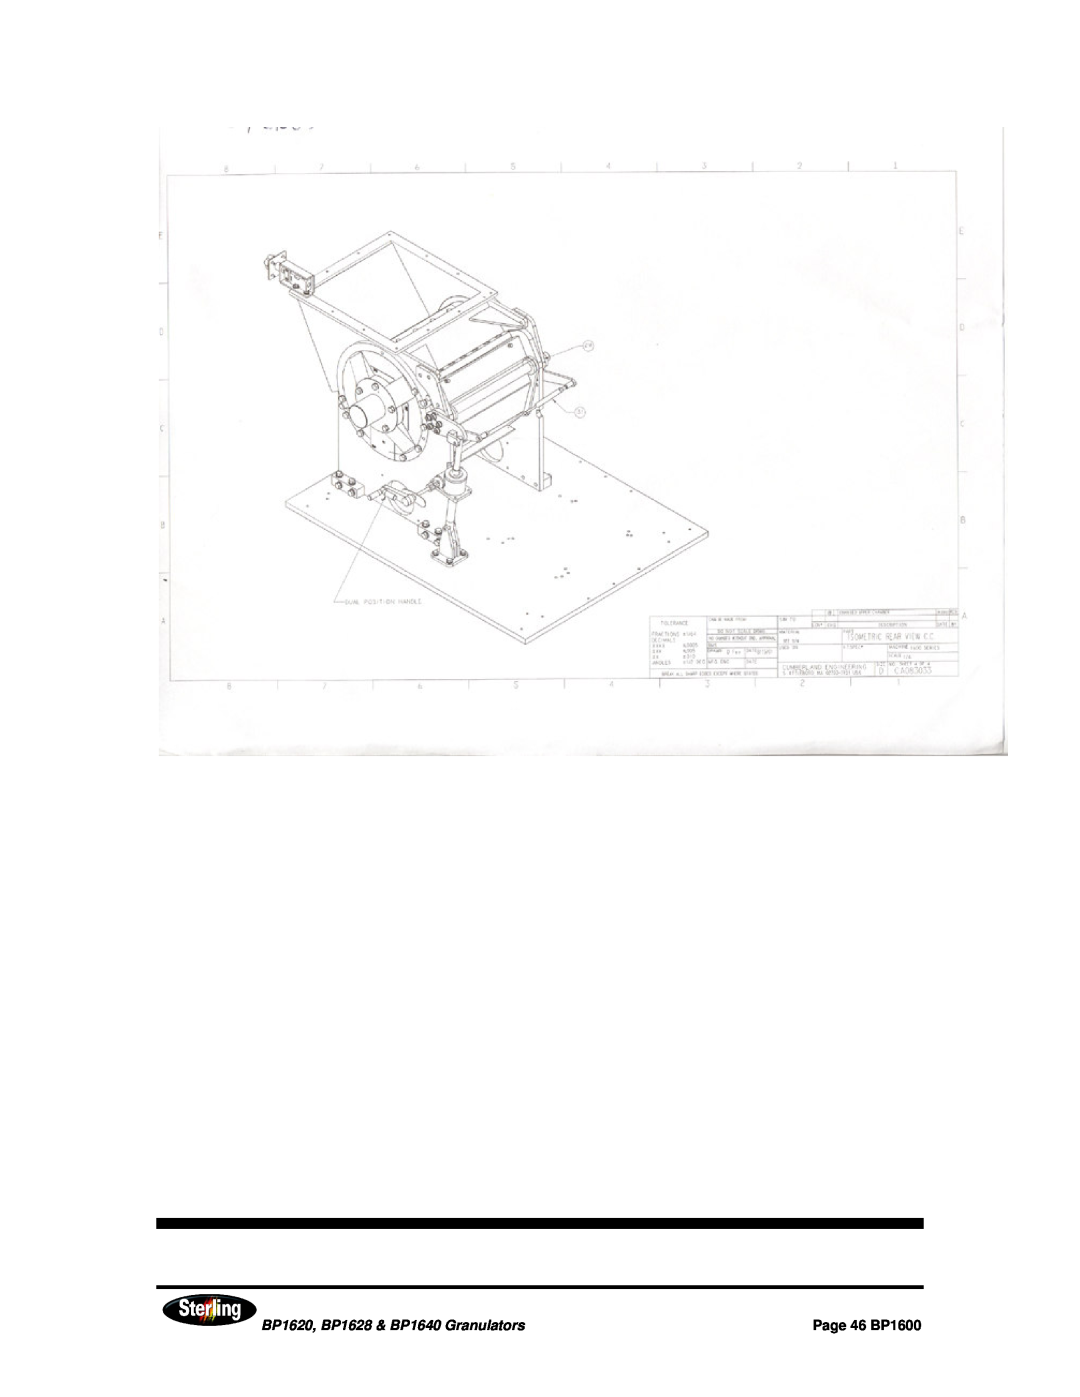 Sterling installation manual BP1620, BP1628 & BP1640 Granulators, Page 46 BP1600 